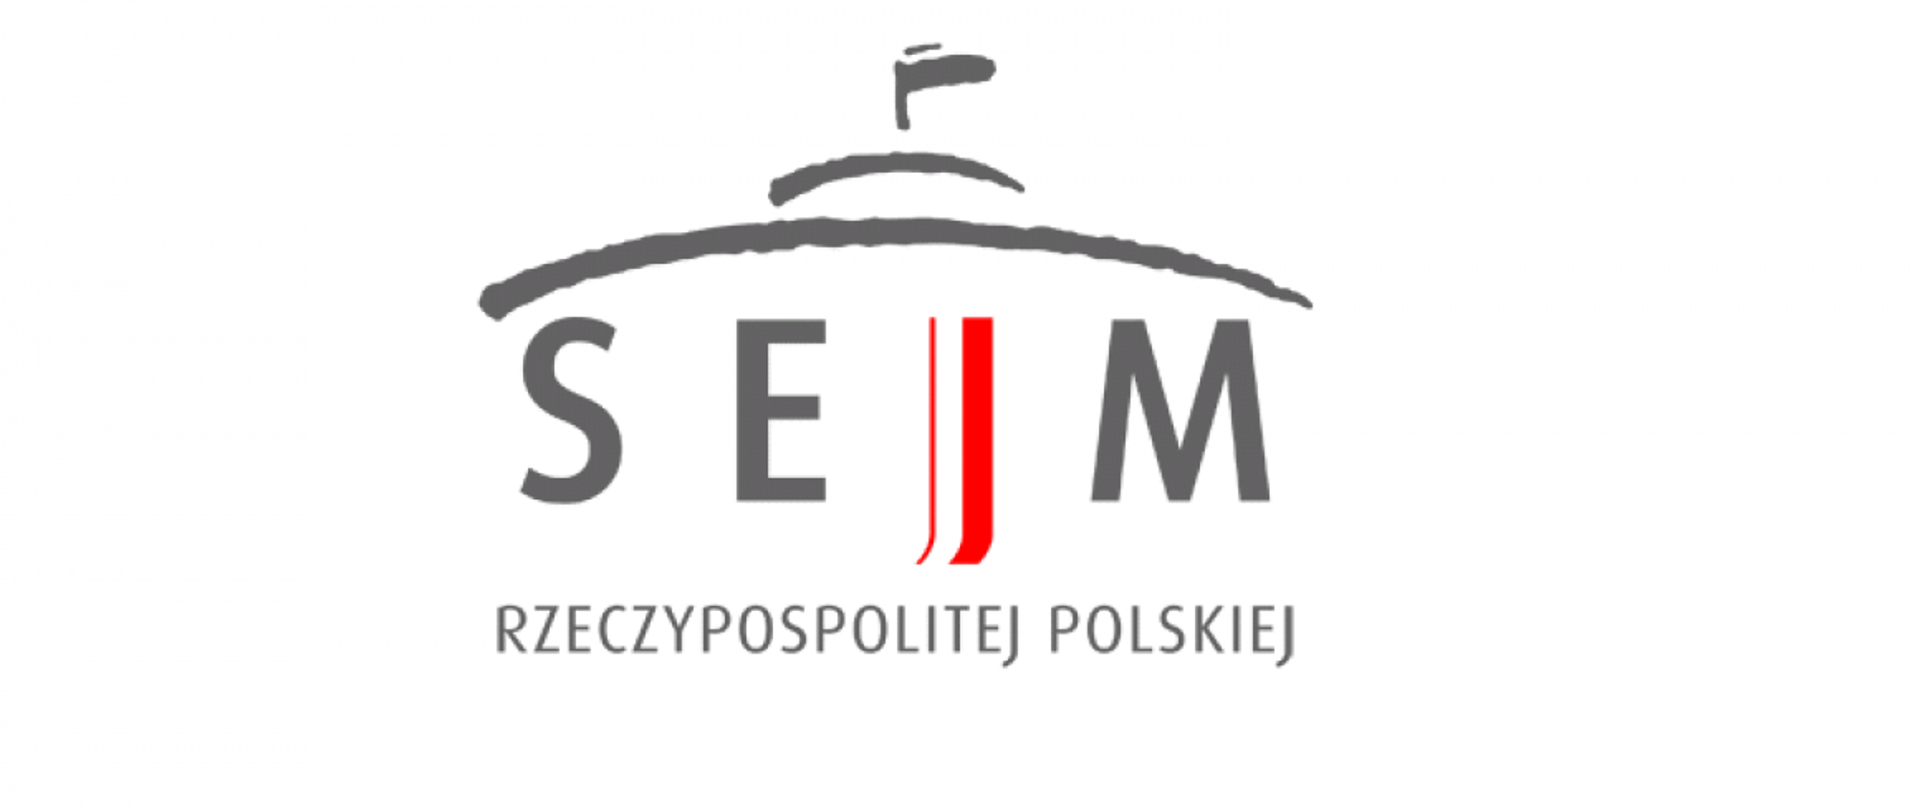 Sejm logo